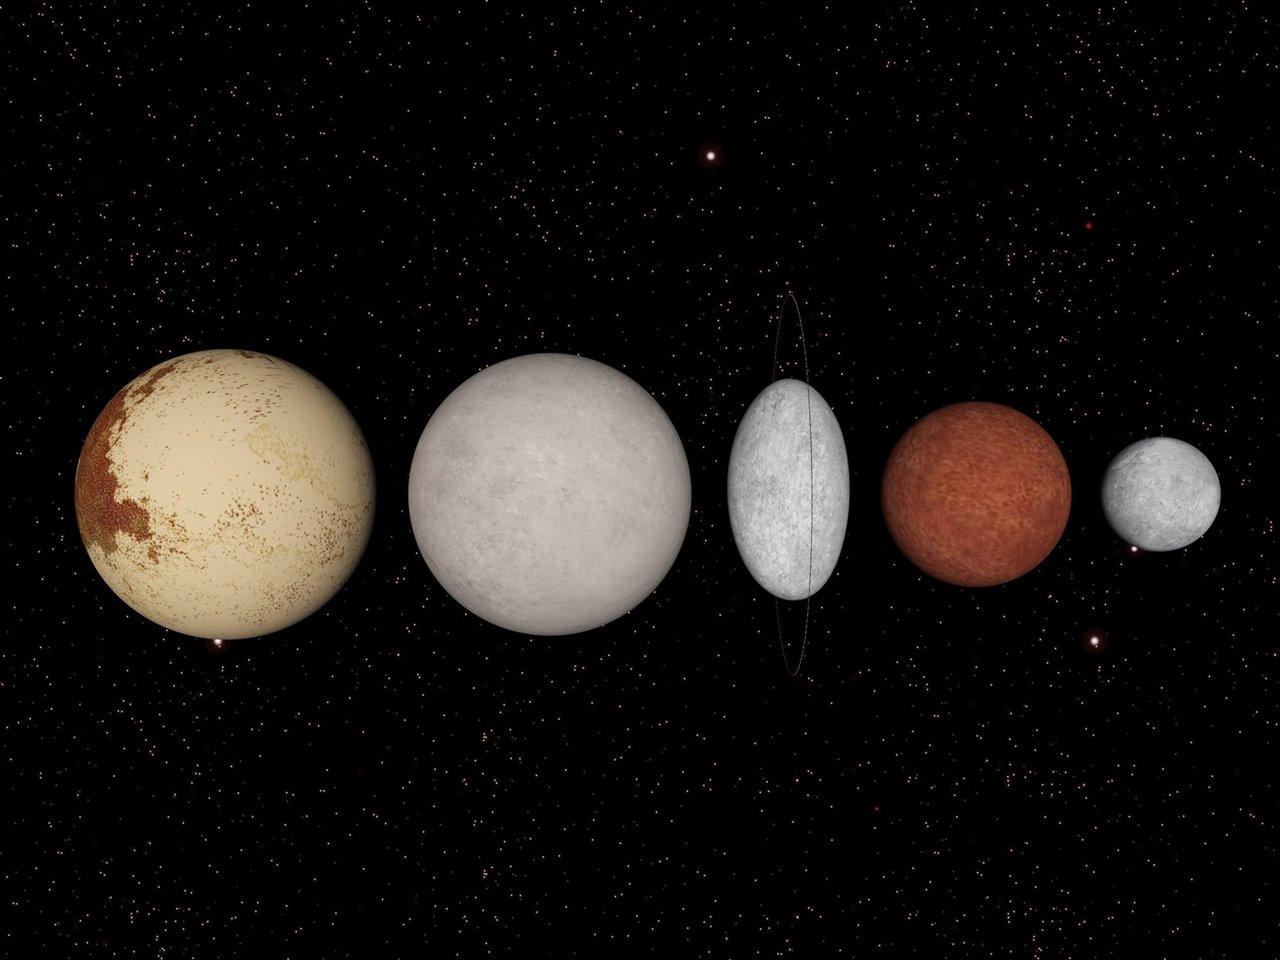  Los planetas enanos del sistema solar:Plutón, Eris, Haumea, Makemake y Ceres